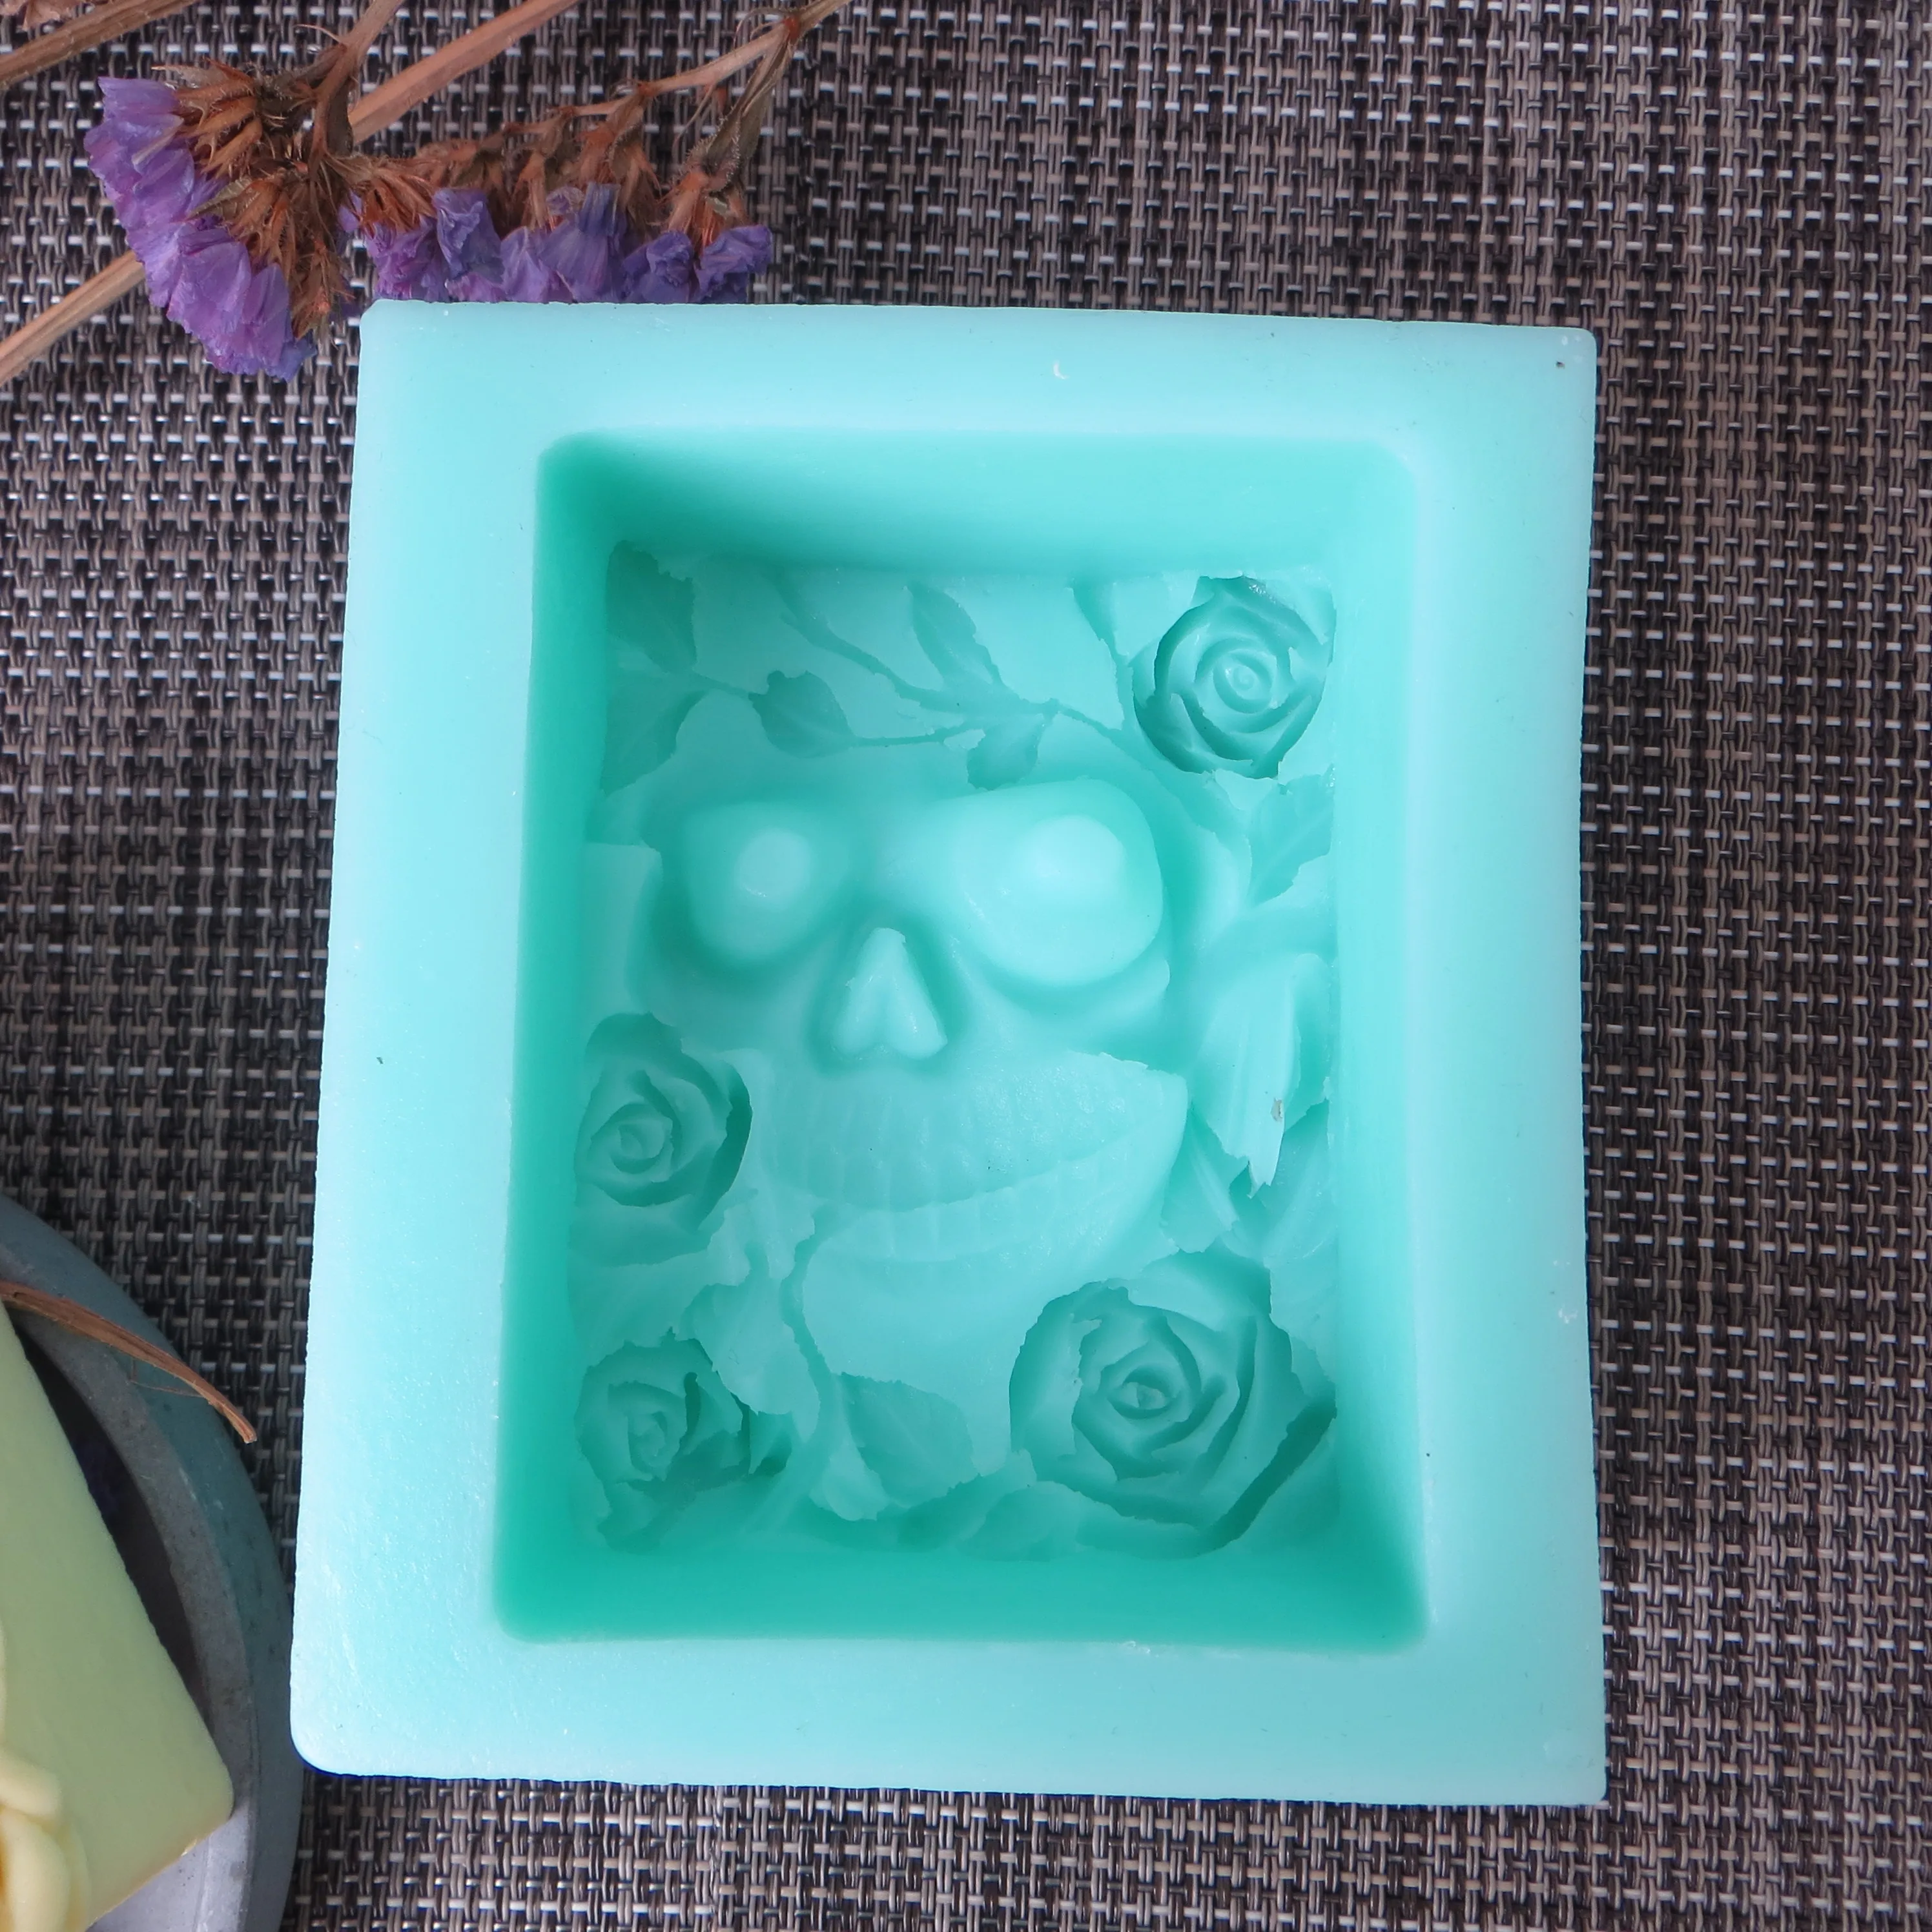 Хэллоуин цветок розы для декорирования форма для изготовления черепа для мыла DIY Череп мыло Плесень Роза Ароматизированная Форма Мыло пресс-формы для торта полимерные глиняные формы